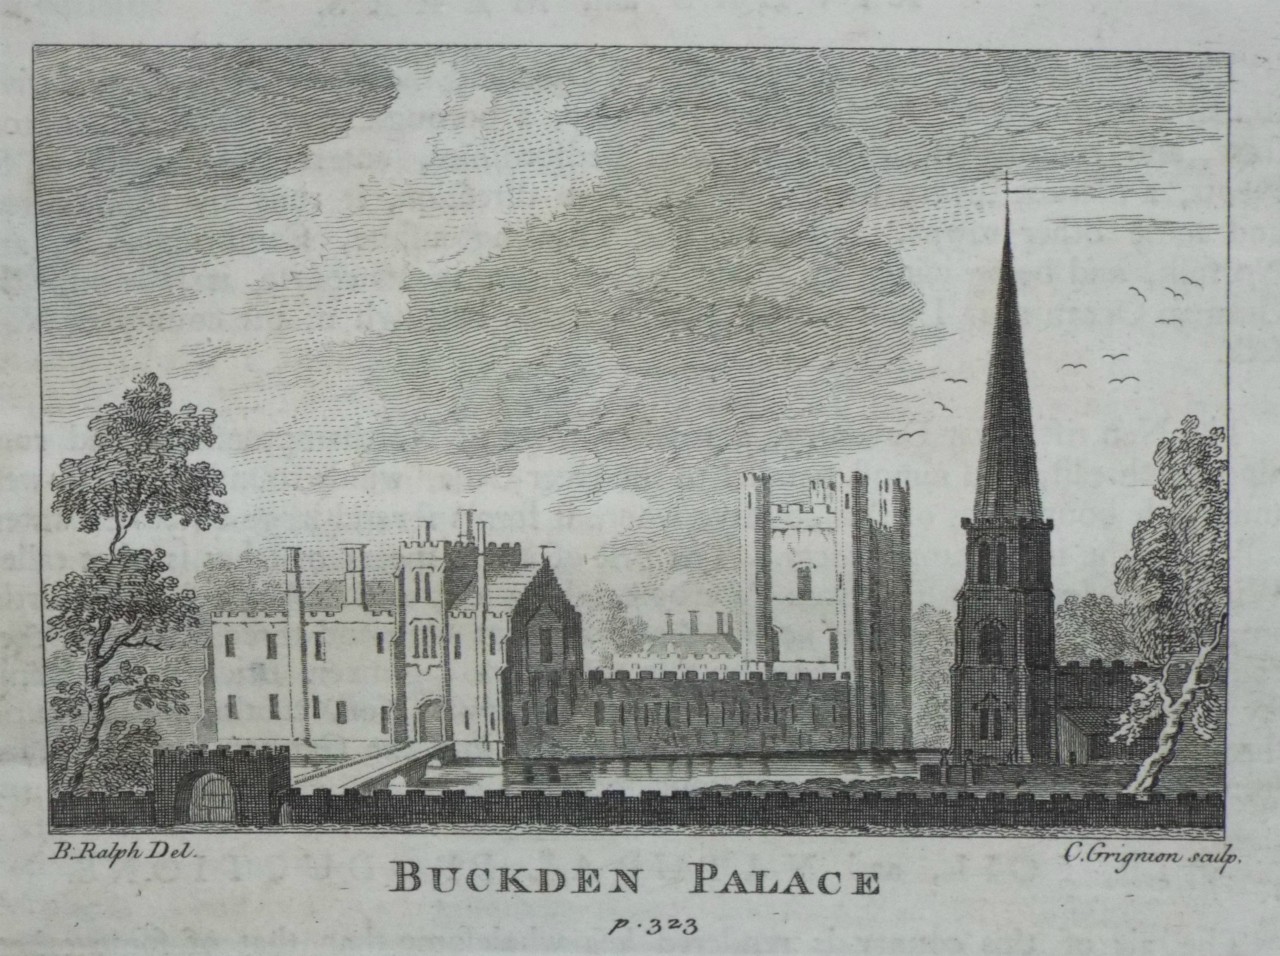 Print - Buckden Palace p.323 - Grignon